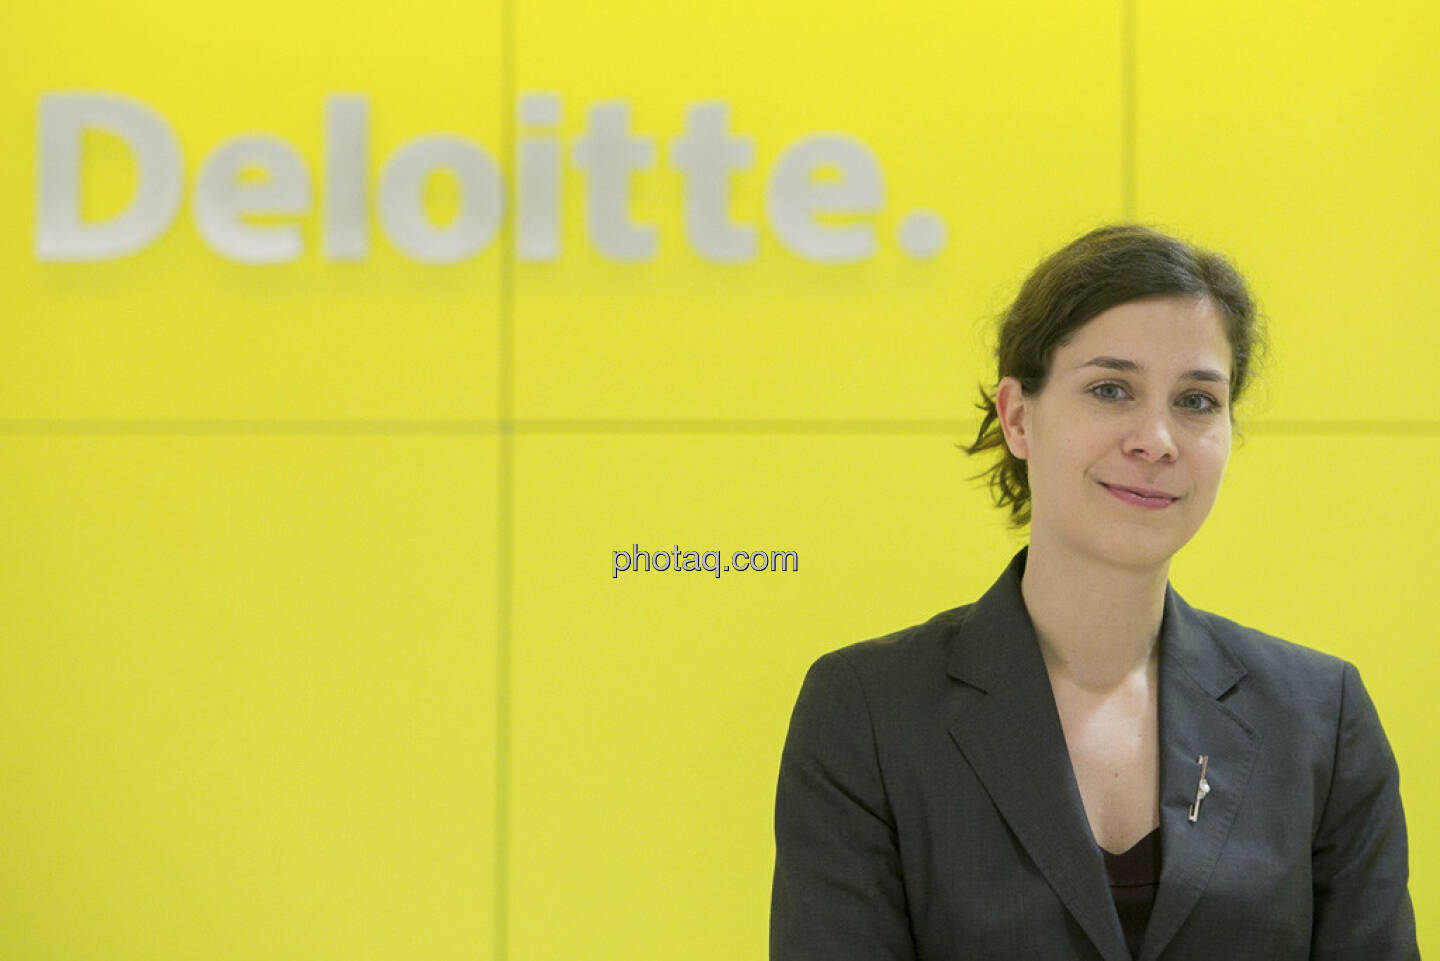 Deloitte - Nora Engel